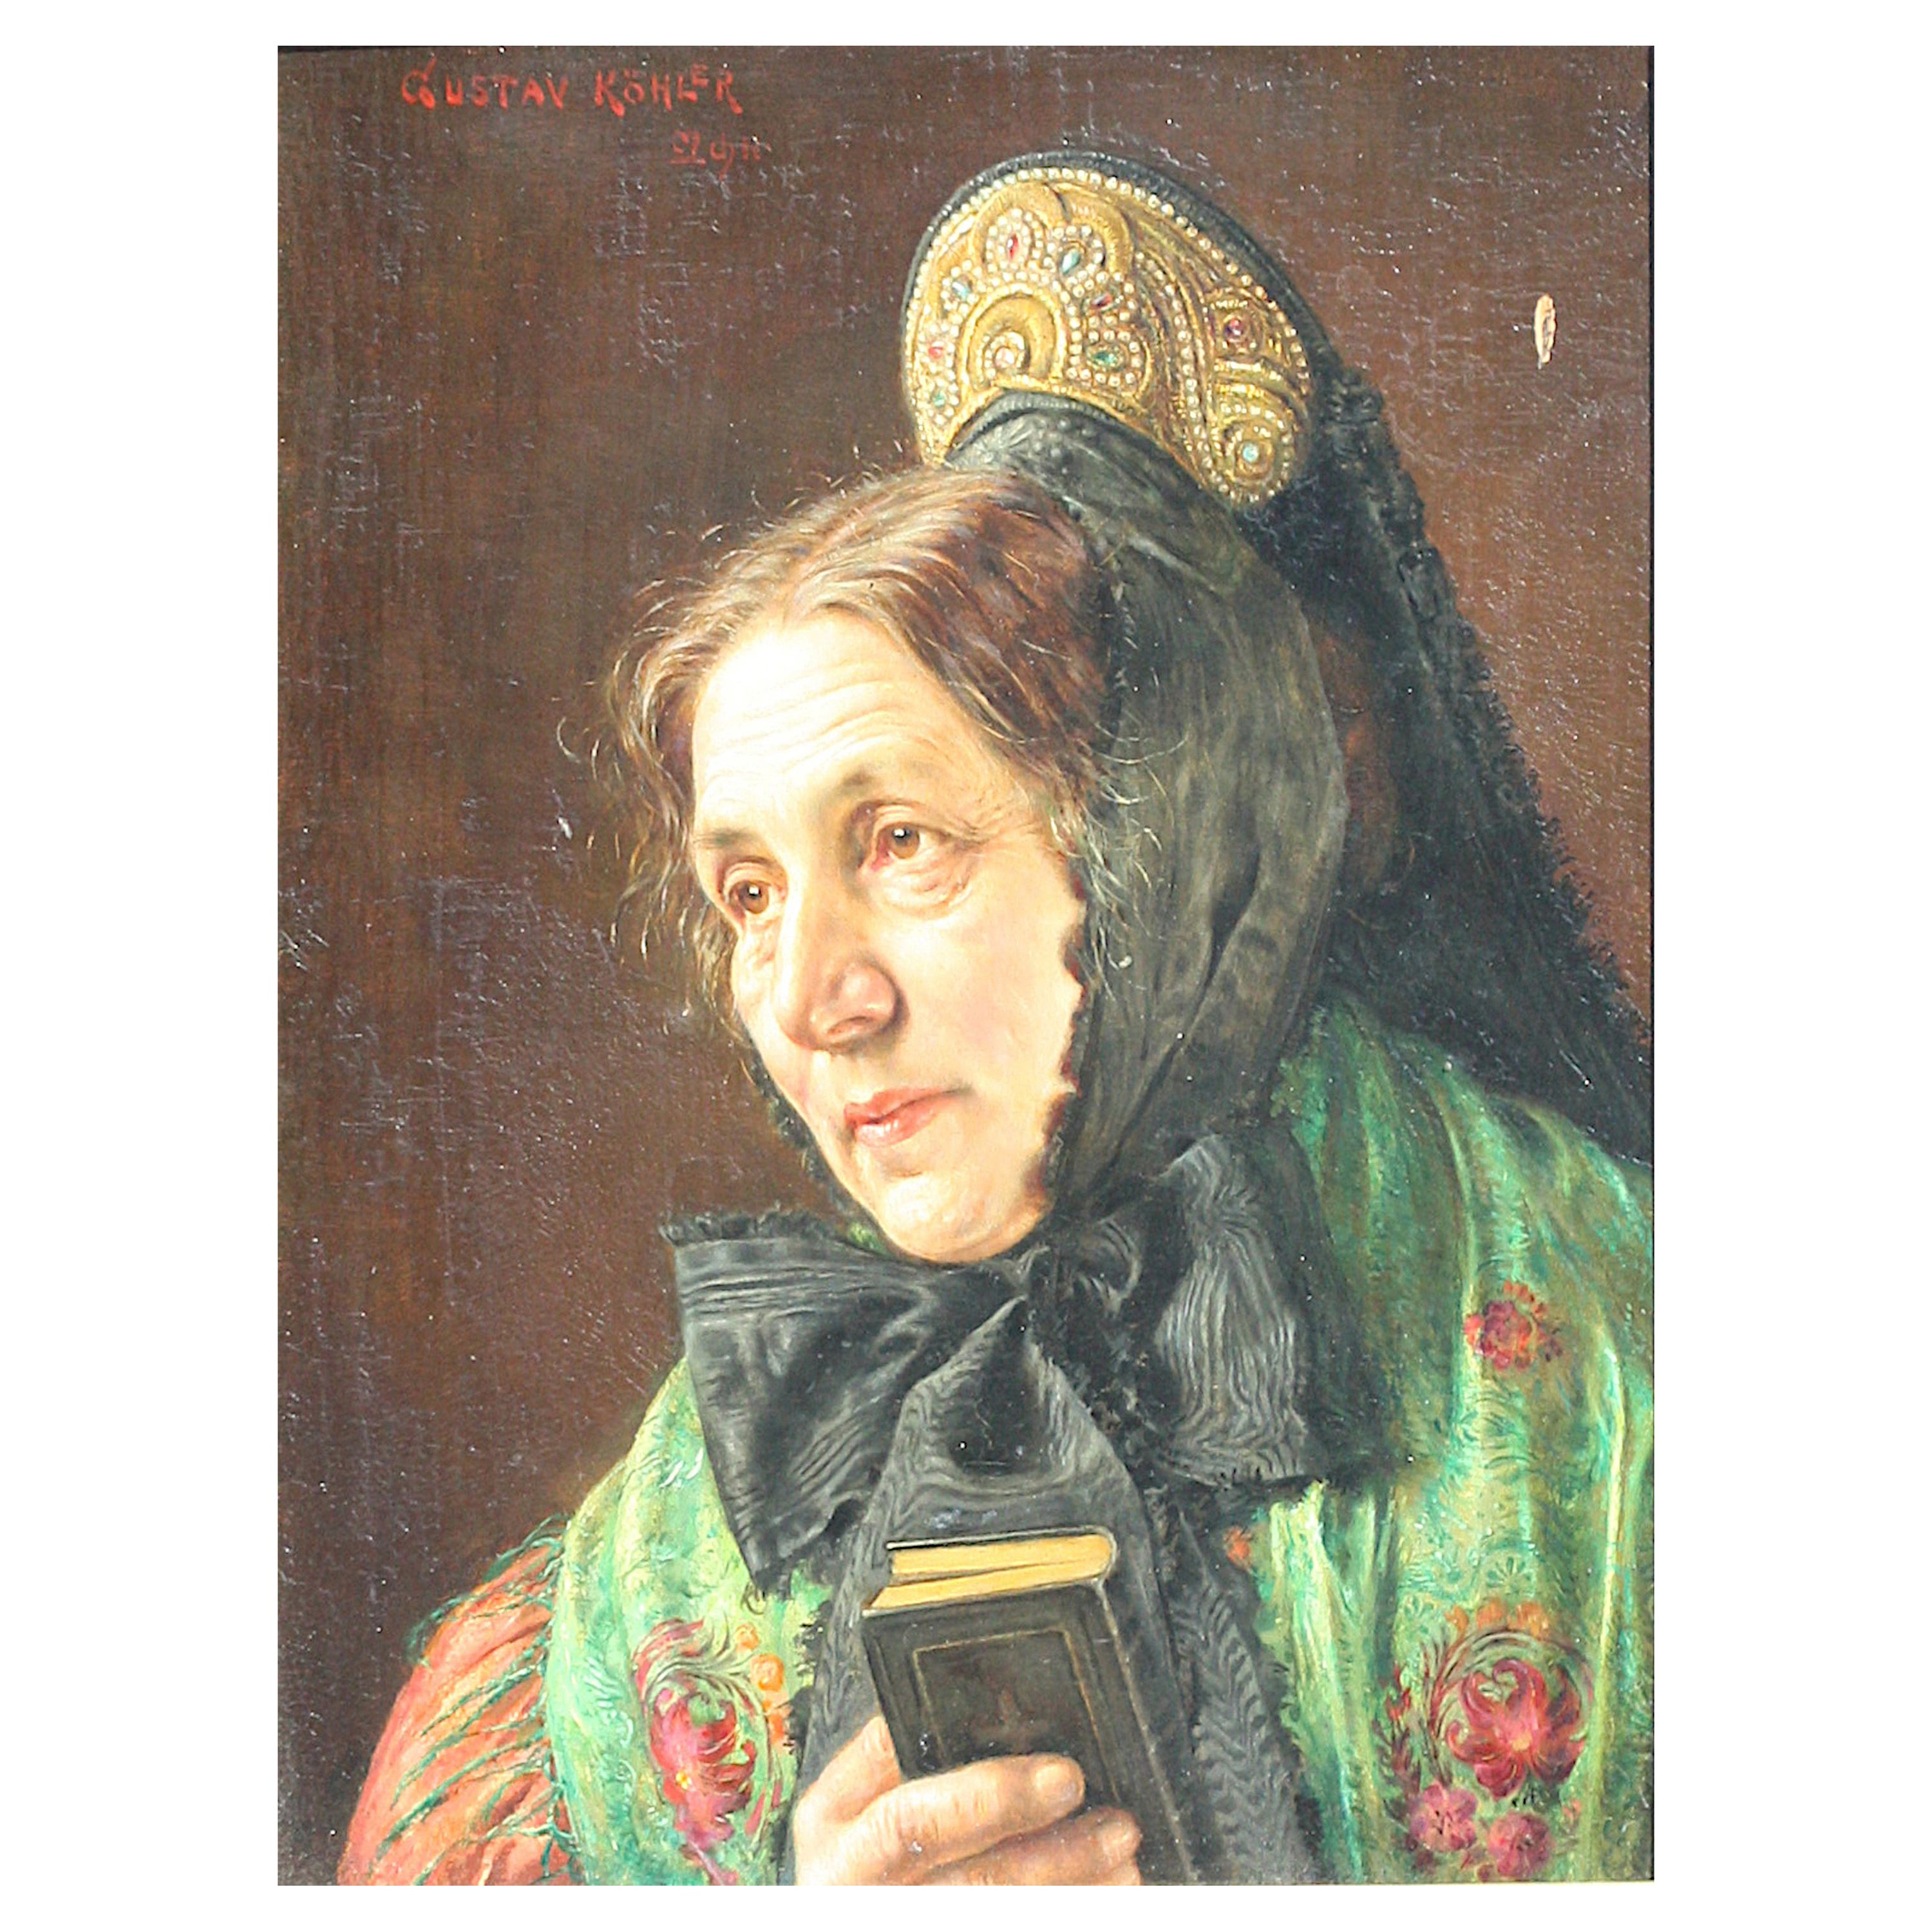 Gustav Kohler Oil on Board Portrait of a Lady 